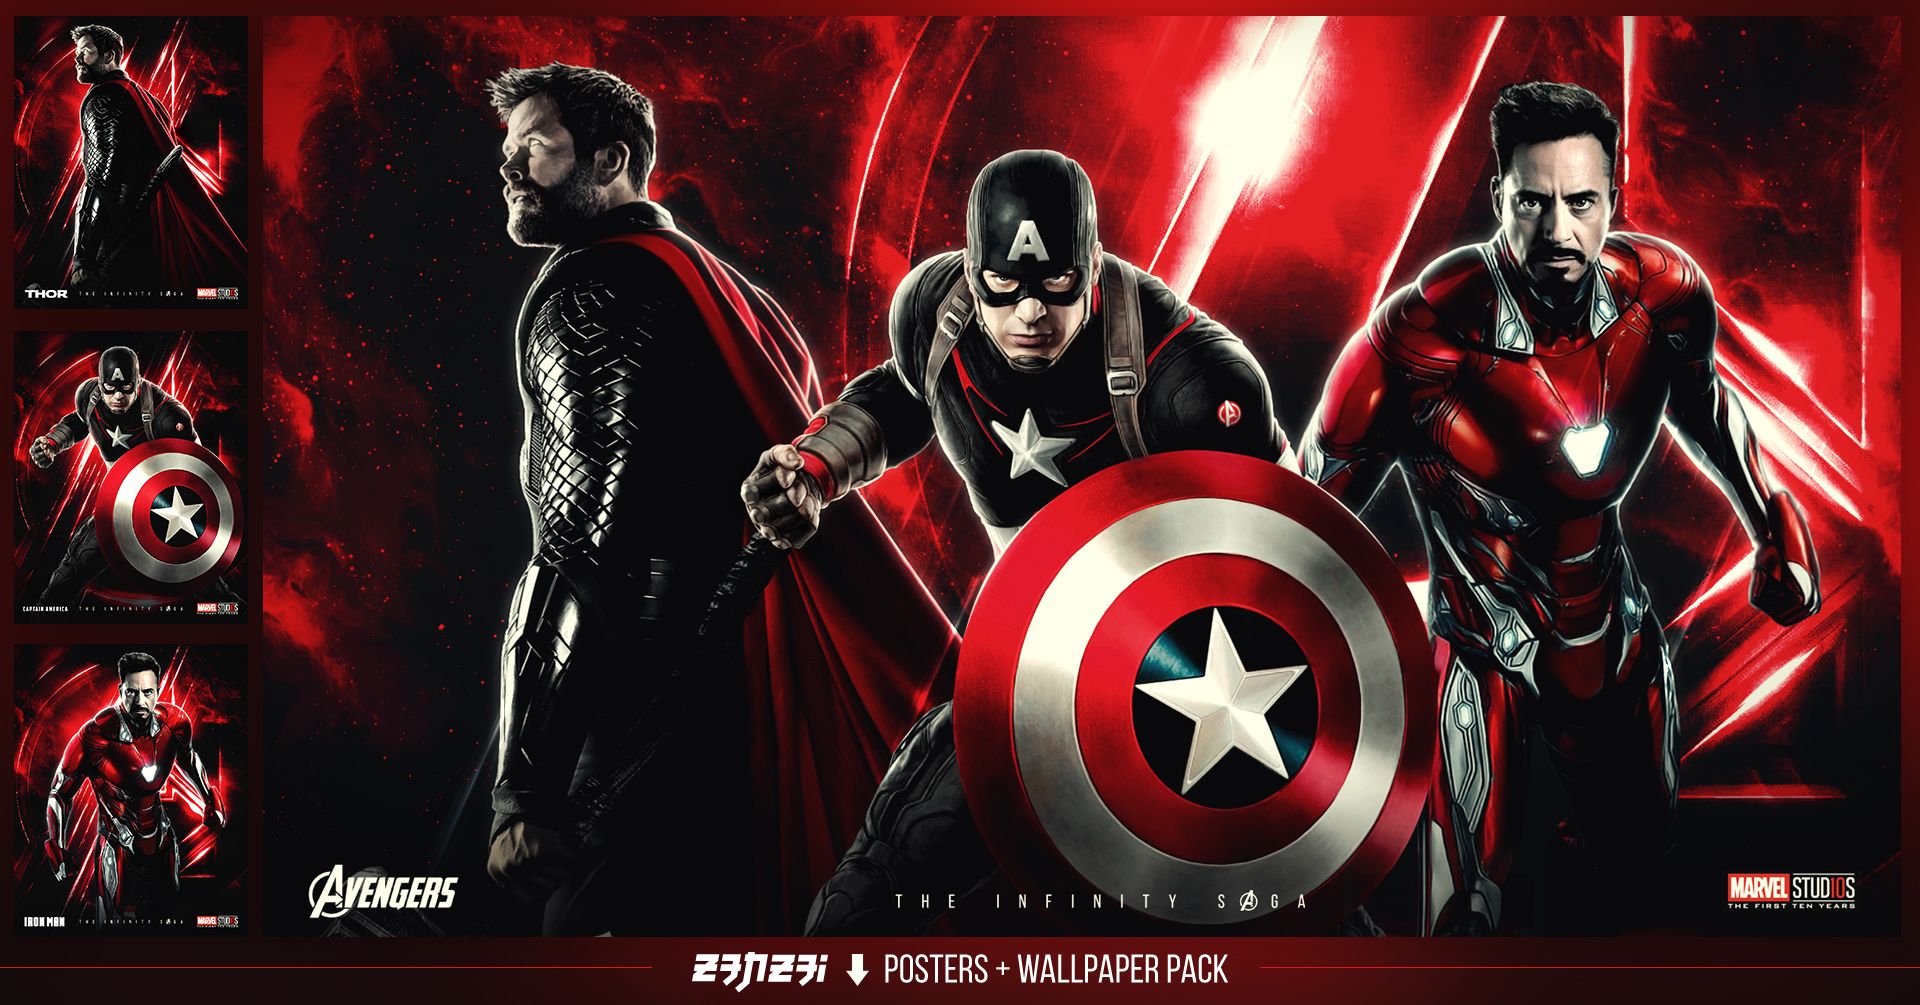 Avengers Infinity Saga Posters + Wallpaper